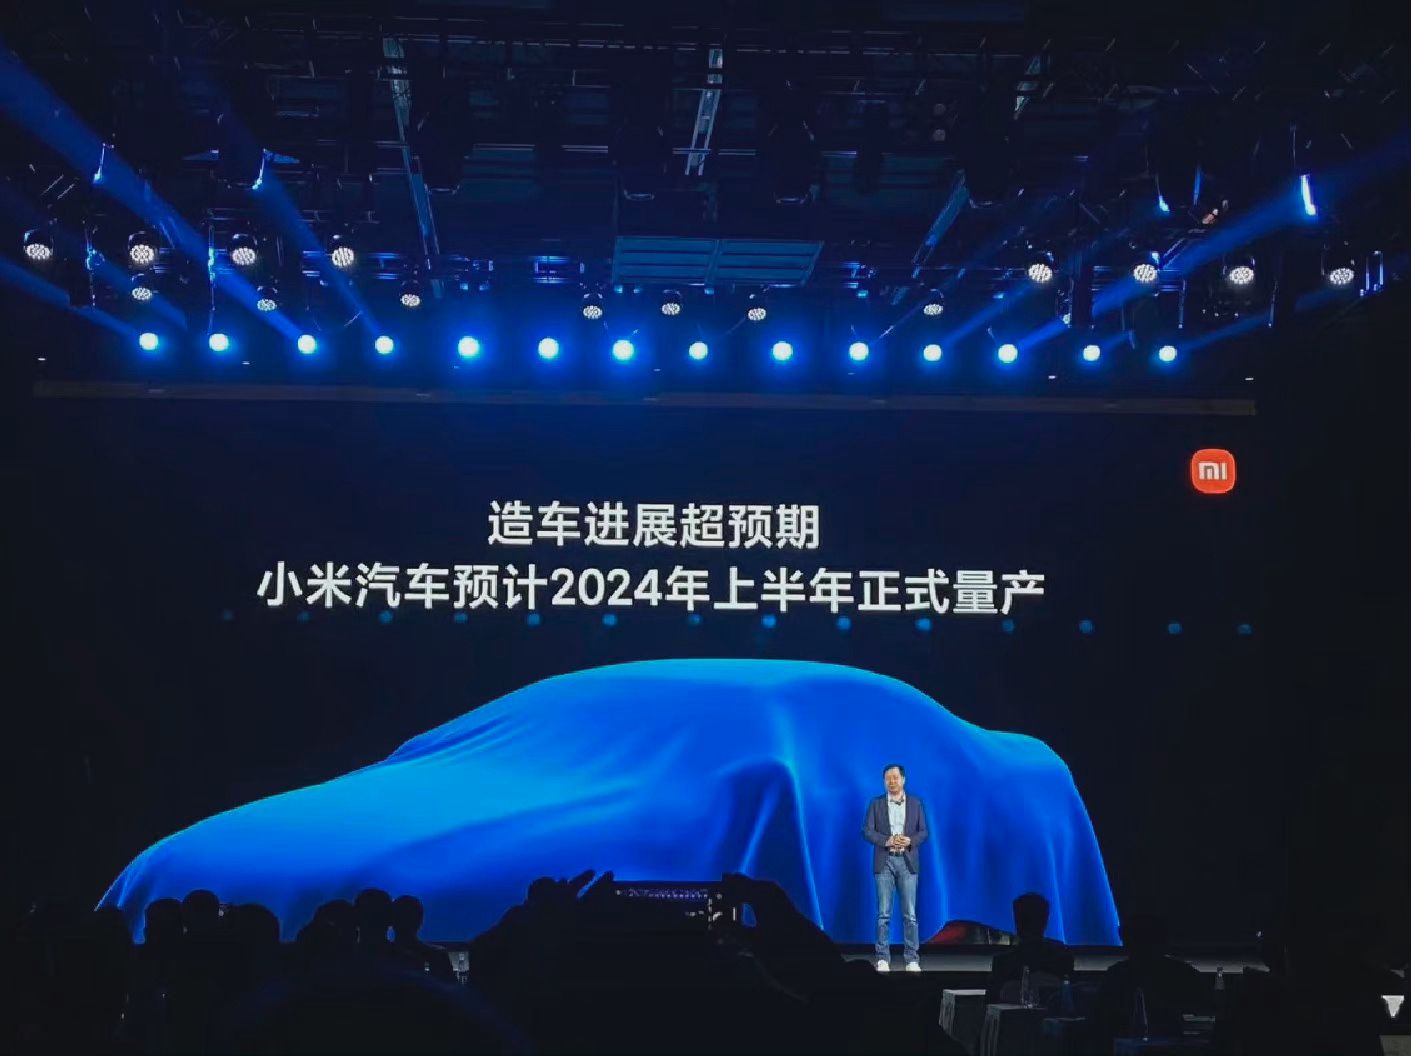 小米汽车SU7发布时间已内部定档 12月28日将揭晓预售价 - Xiaomi 小米 - cnBeta.COM